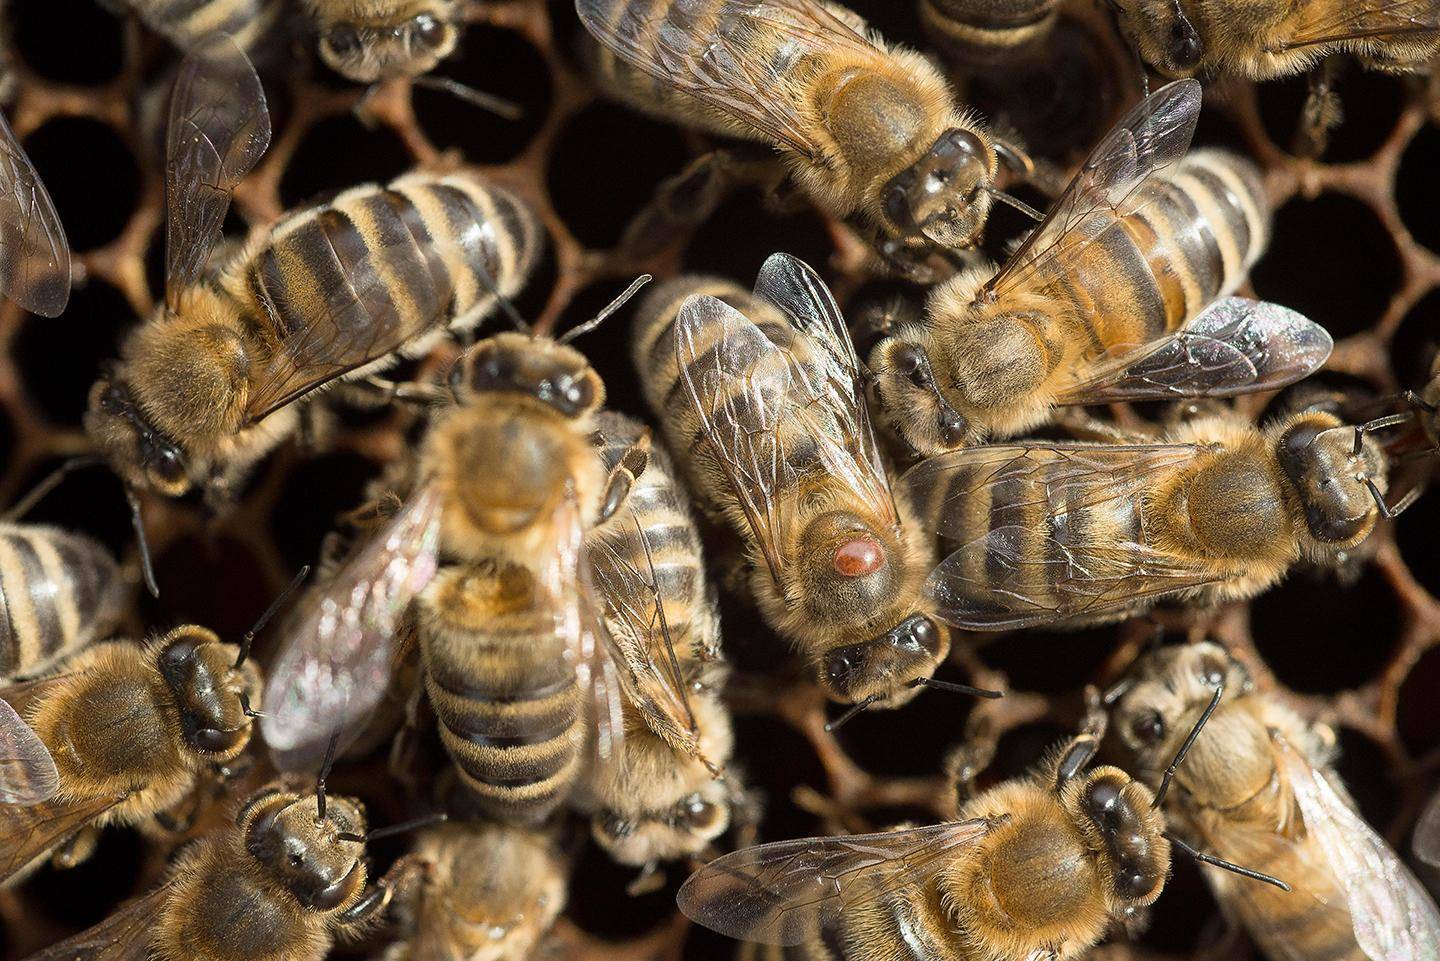 यह कंपनी बना रही है स्वचालित कृत्रिम मधुमक्खियां, करवाया अपनी तकनीक का पेटेंट